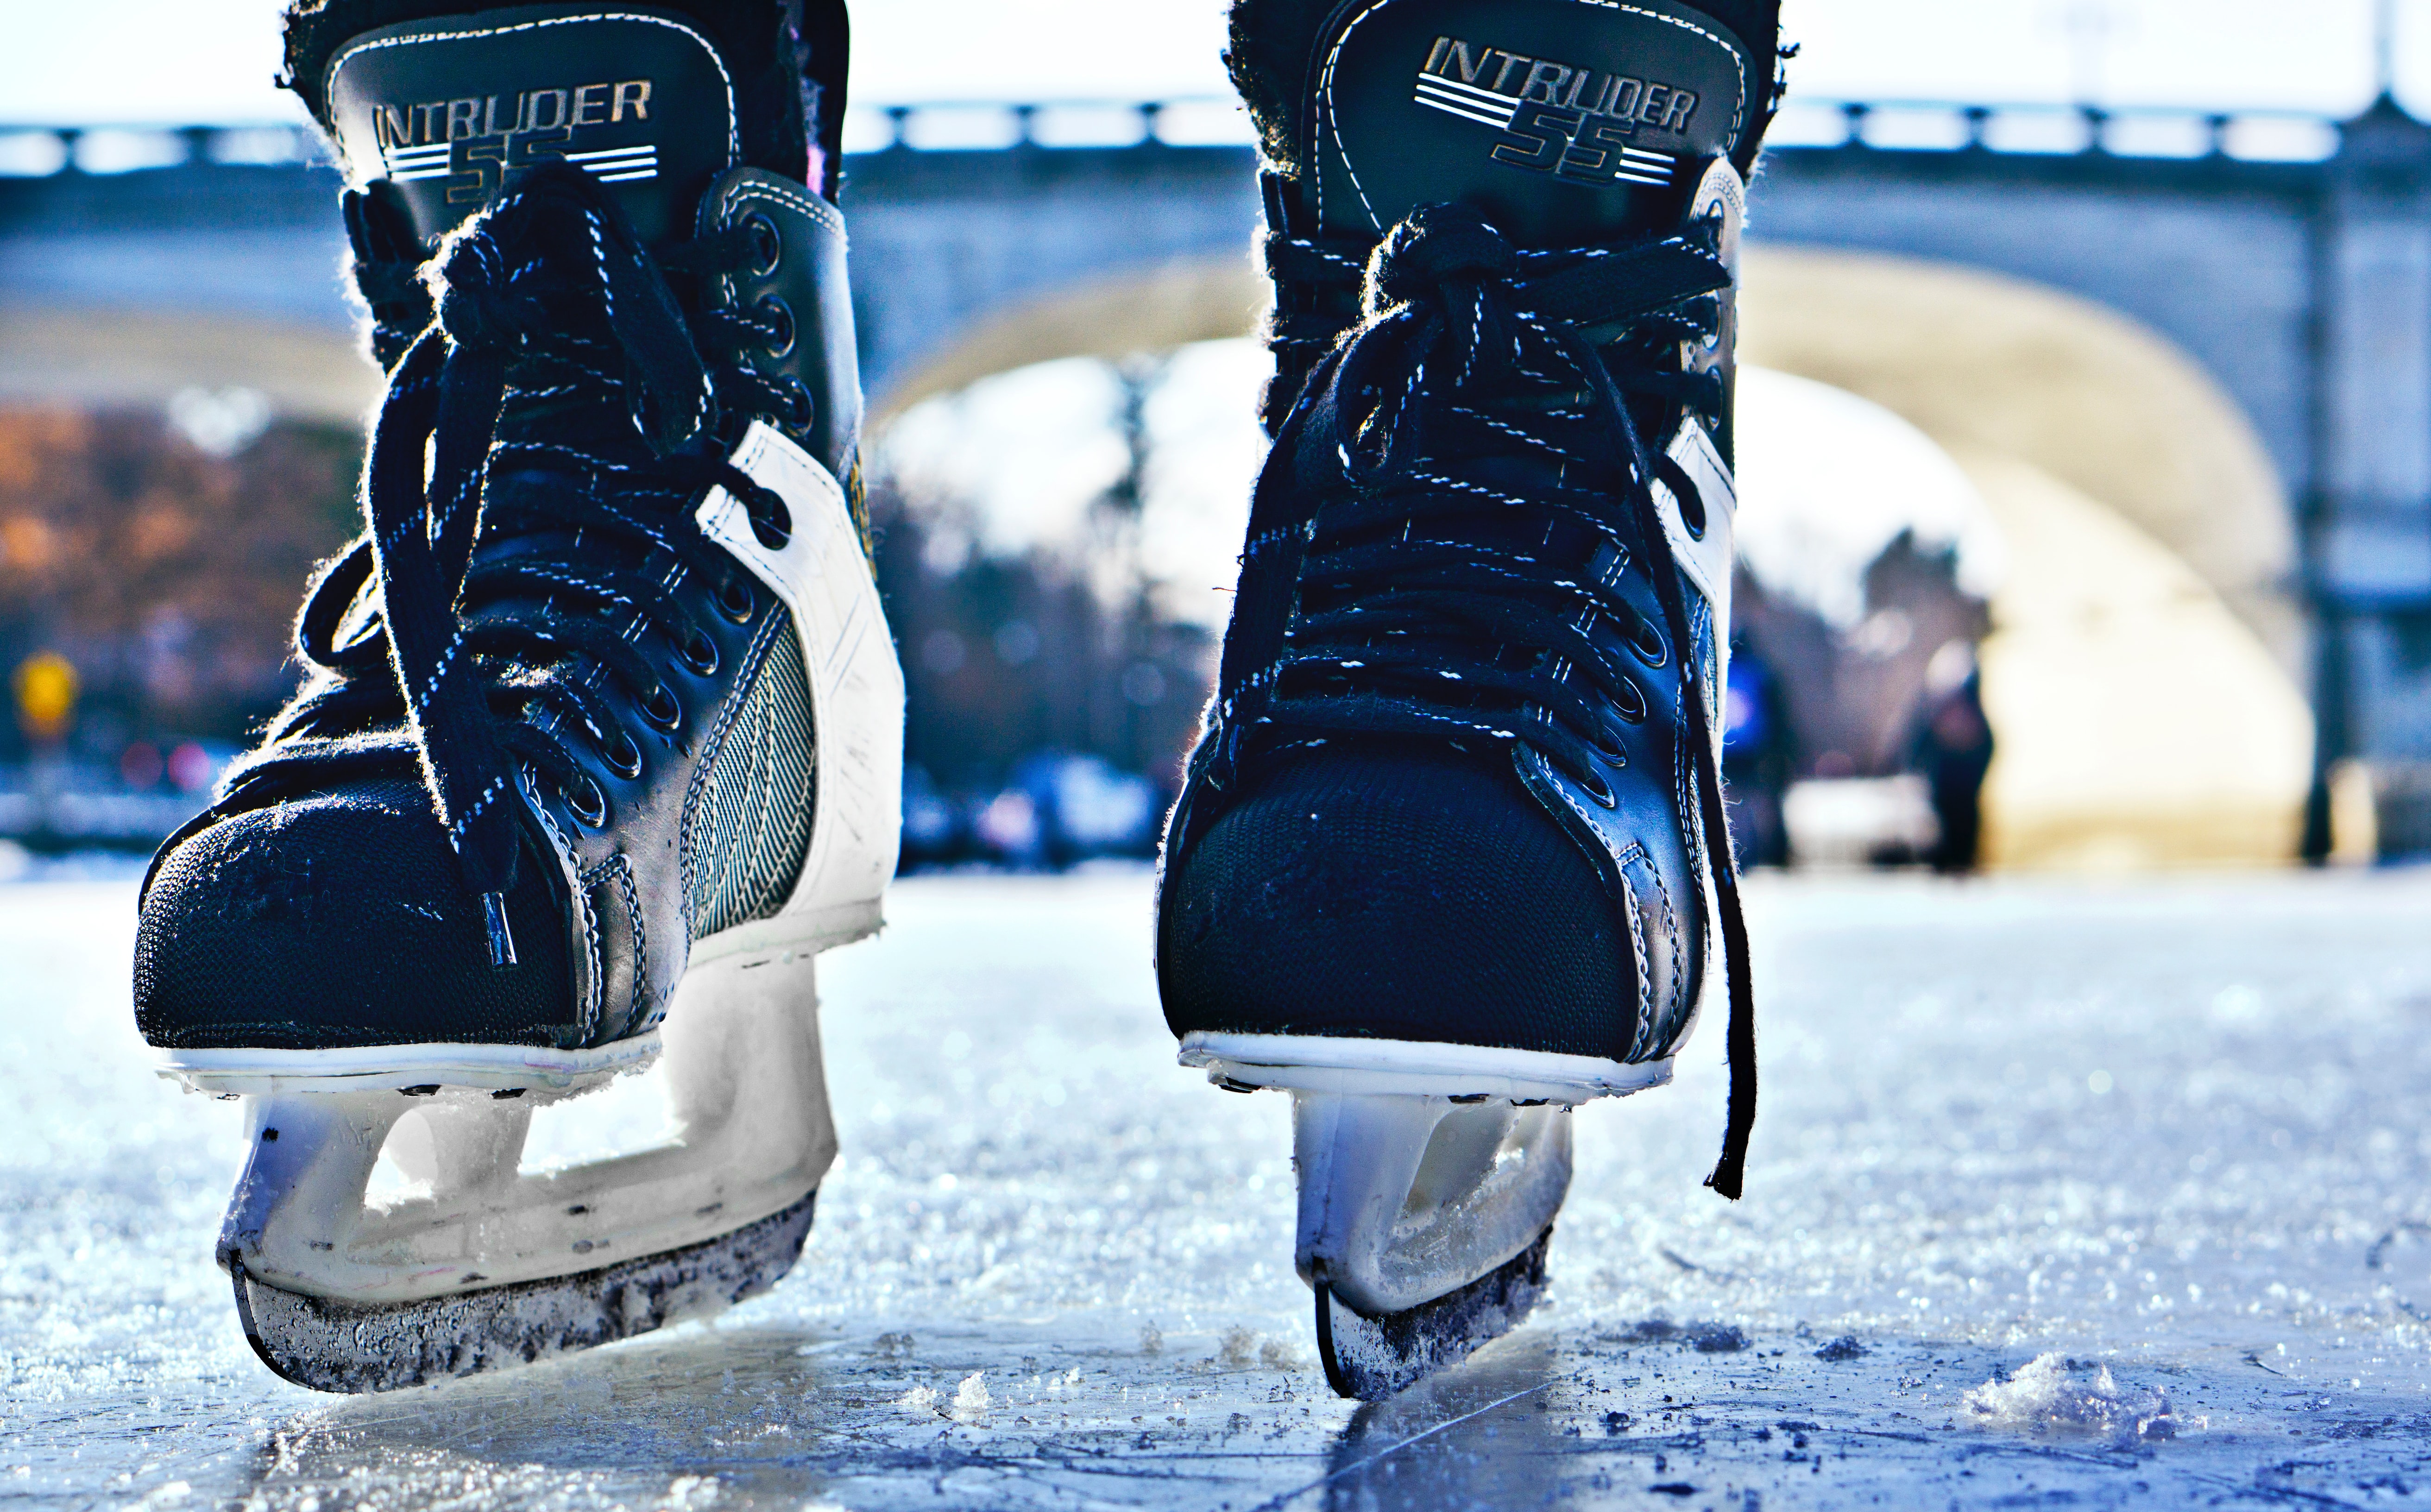 Hockey Skating